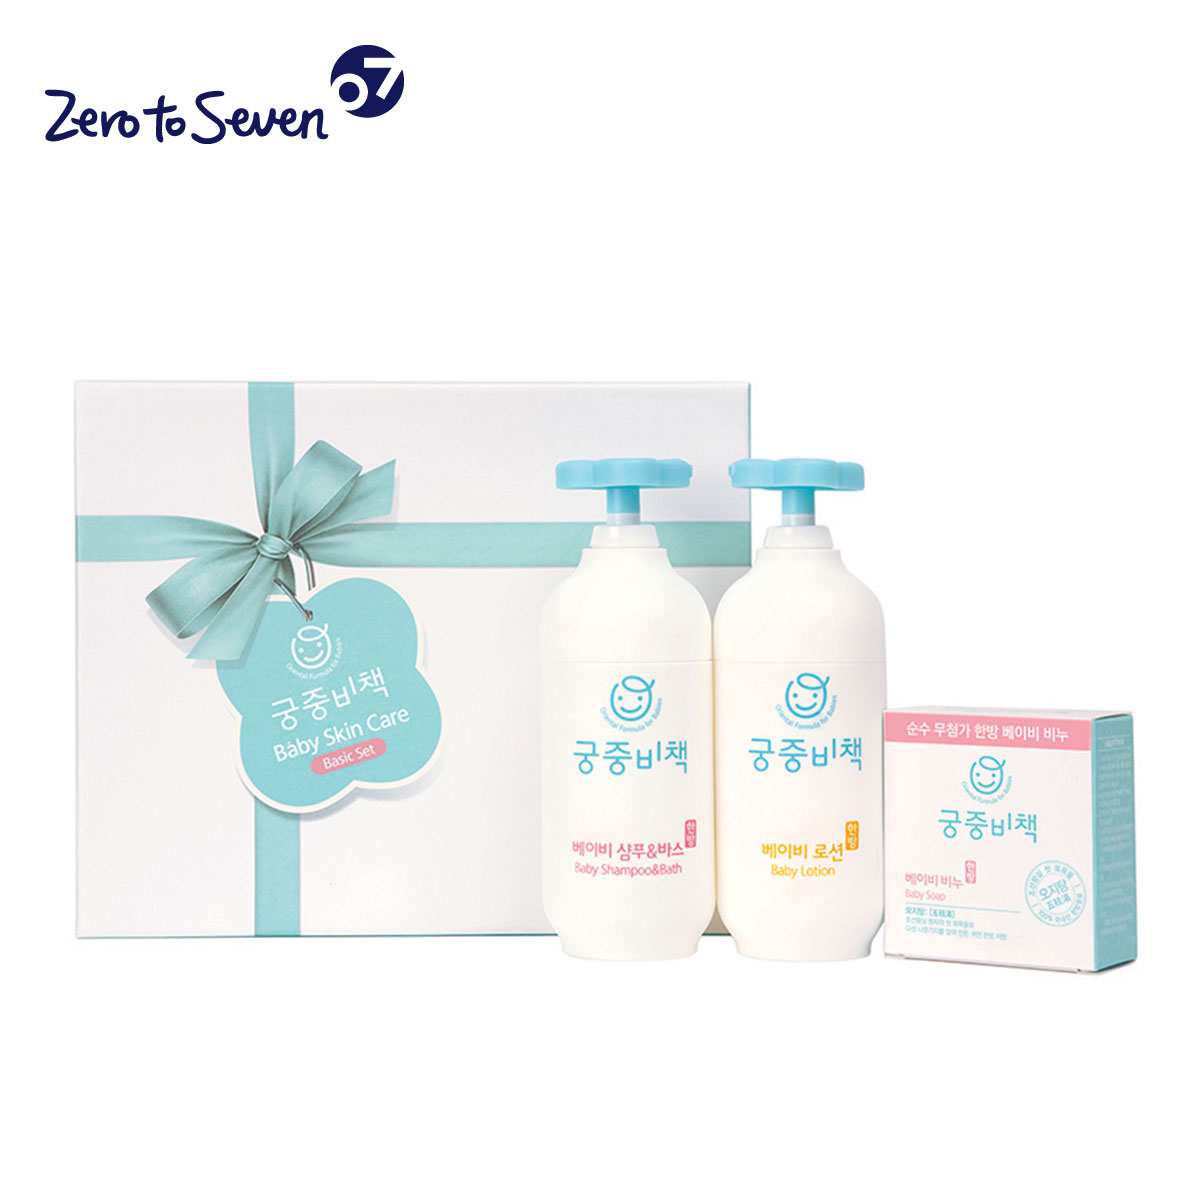 宫中秘策韩国婴儿3件礼盒洗护套装二合一套装组合折扣优惠信息